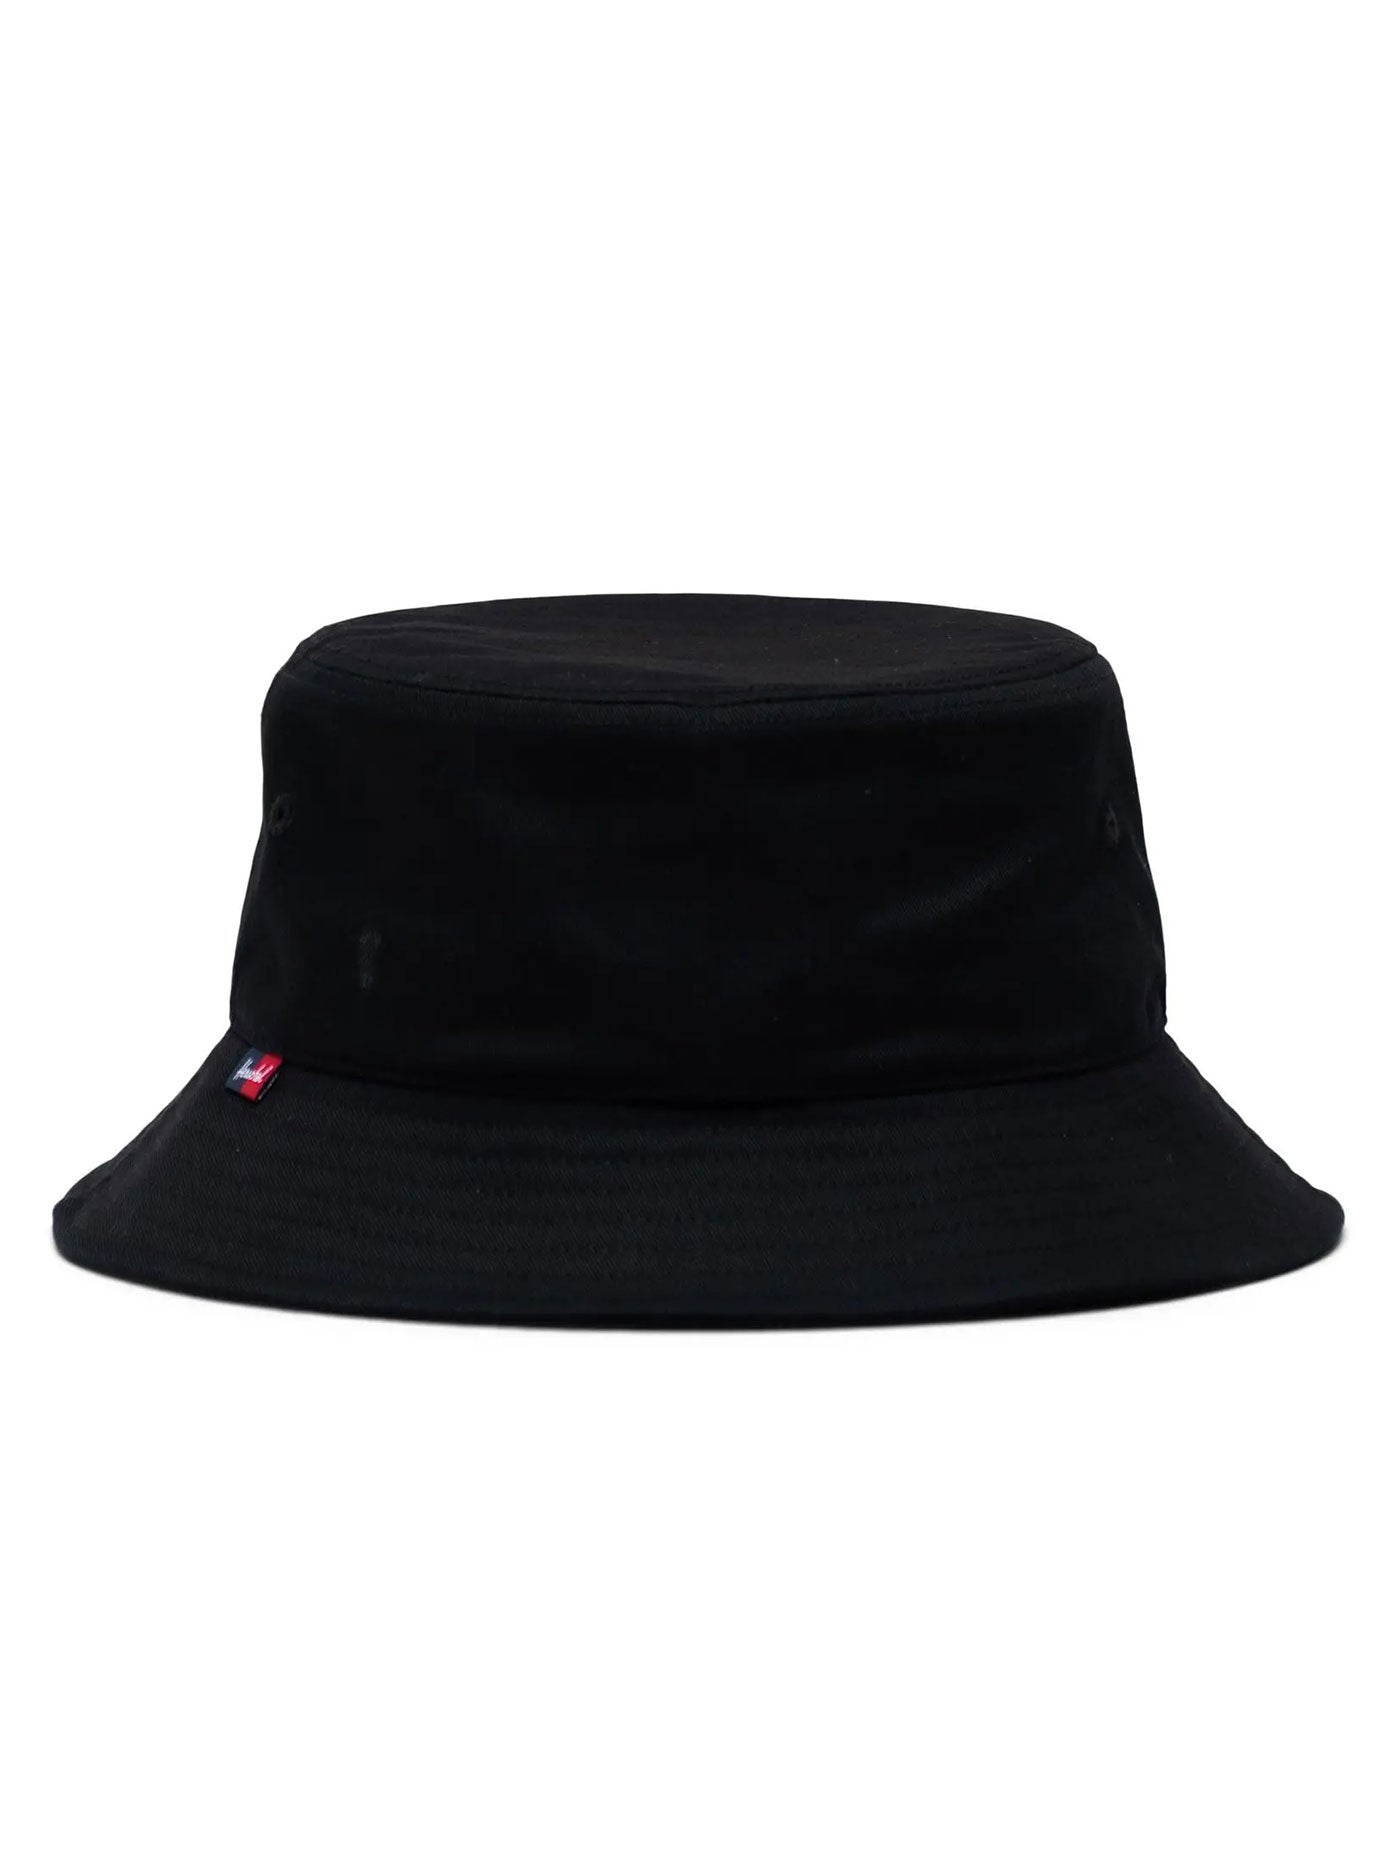 Herschel Norman Bucket Hat